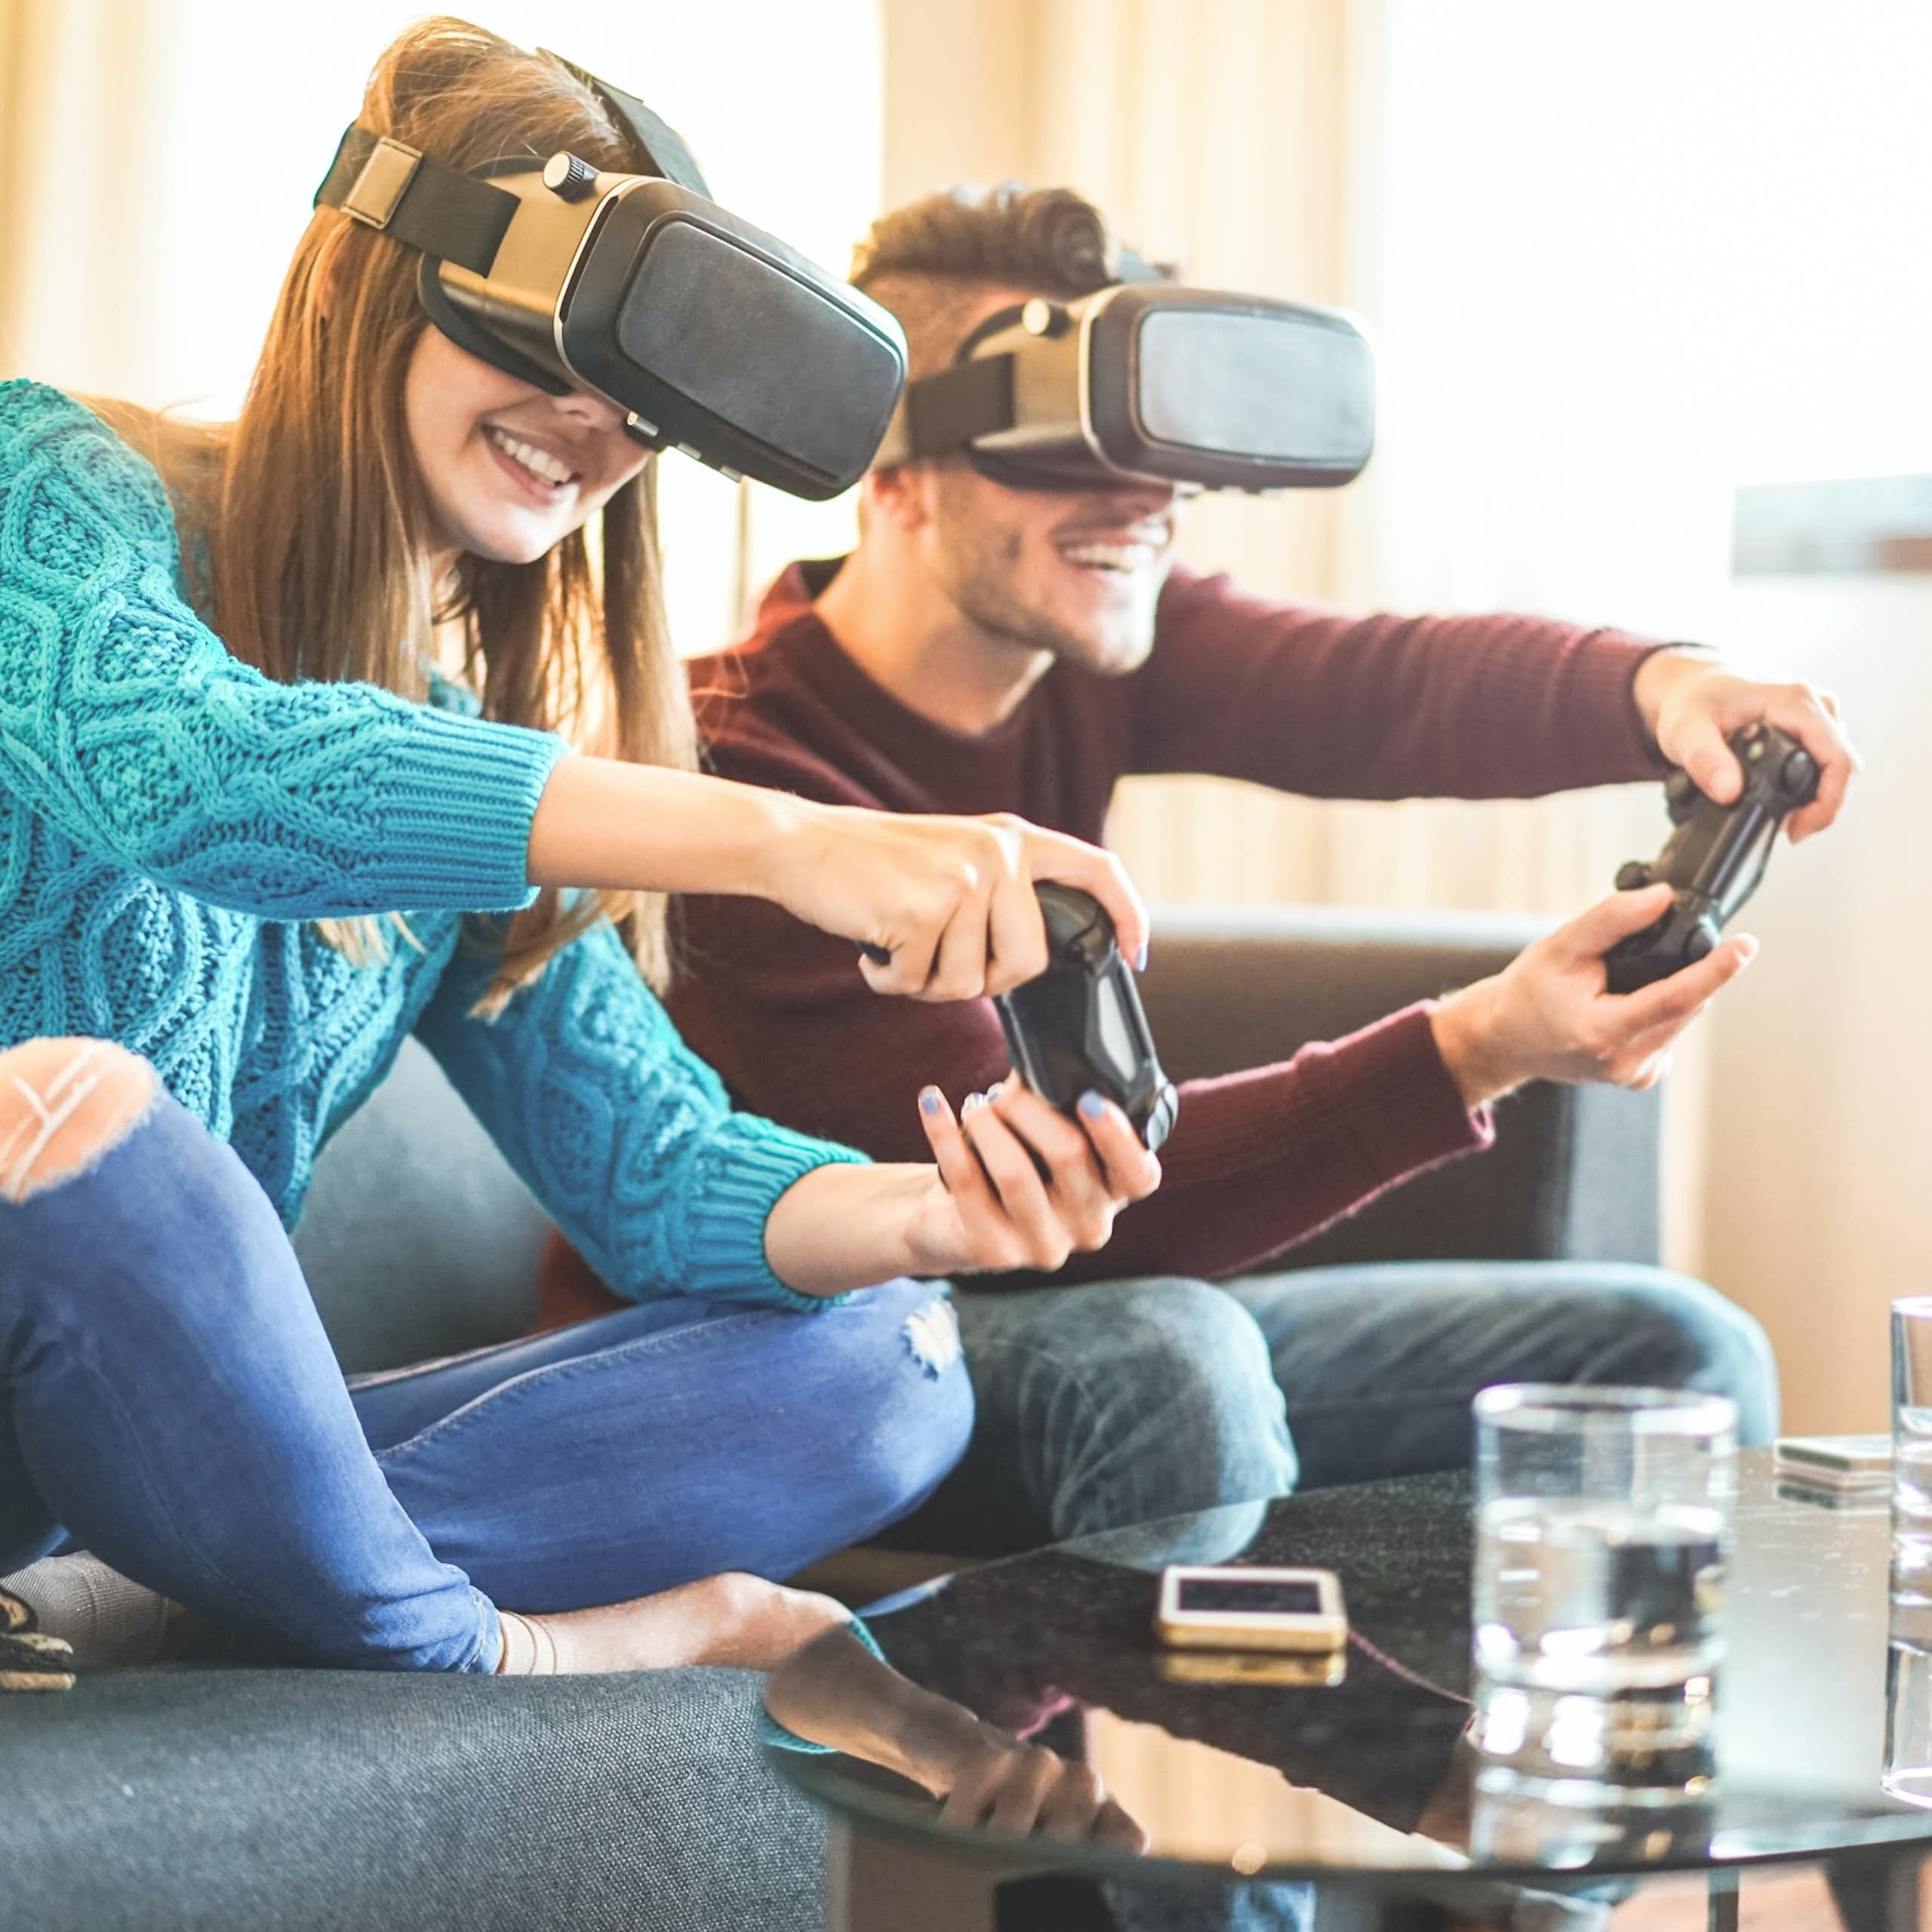 Una pareja de jóvenes jugando a videojuegos con mandos y gafas de realidad virtual.